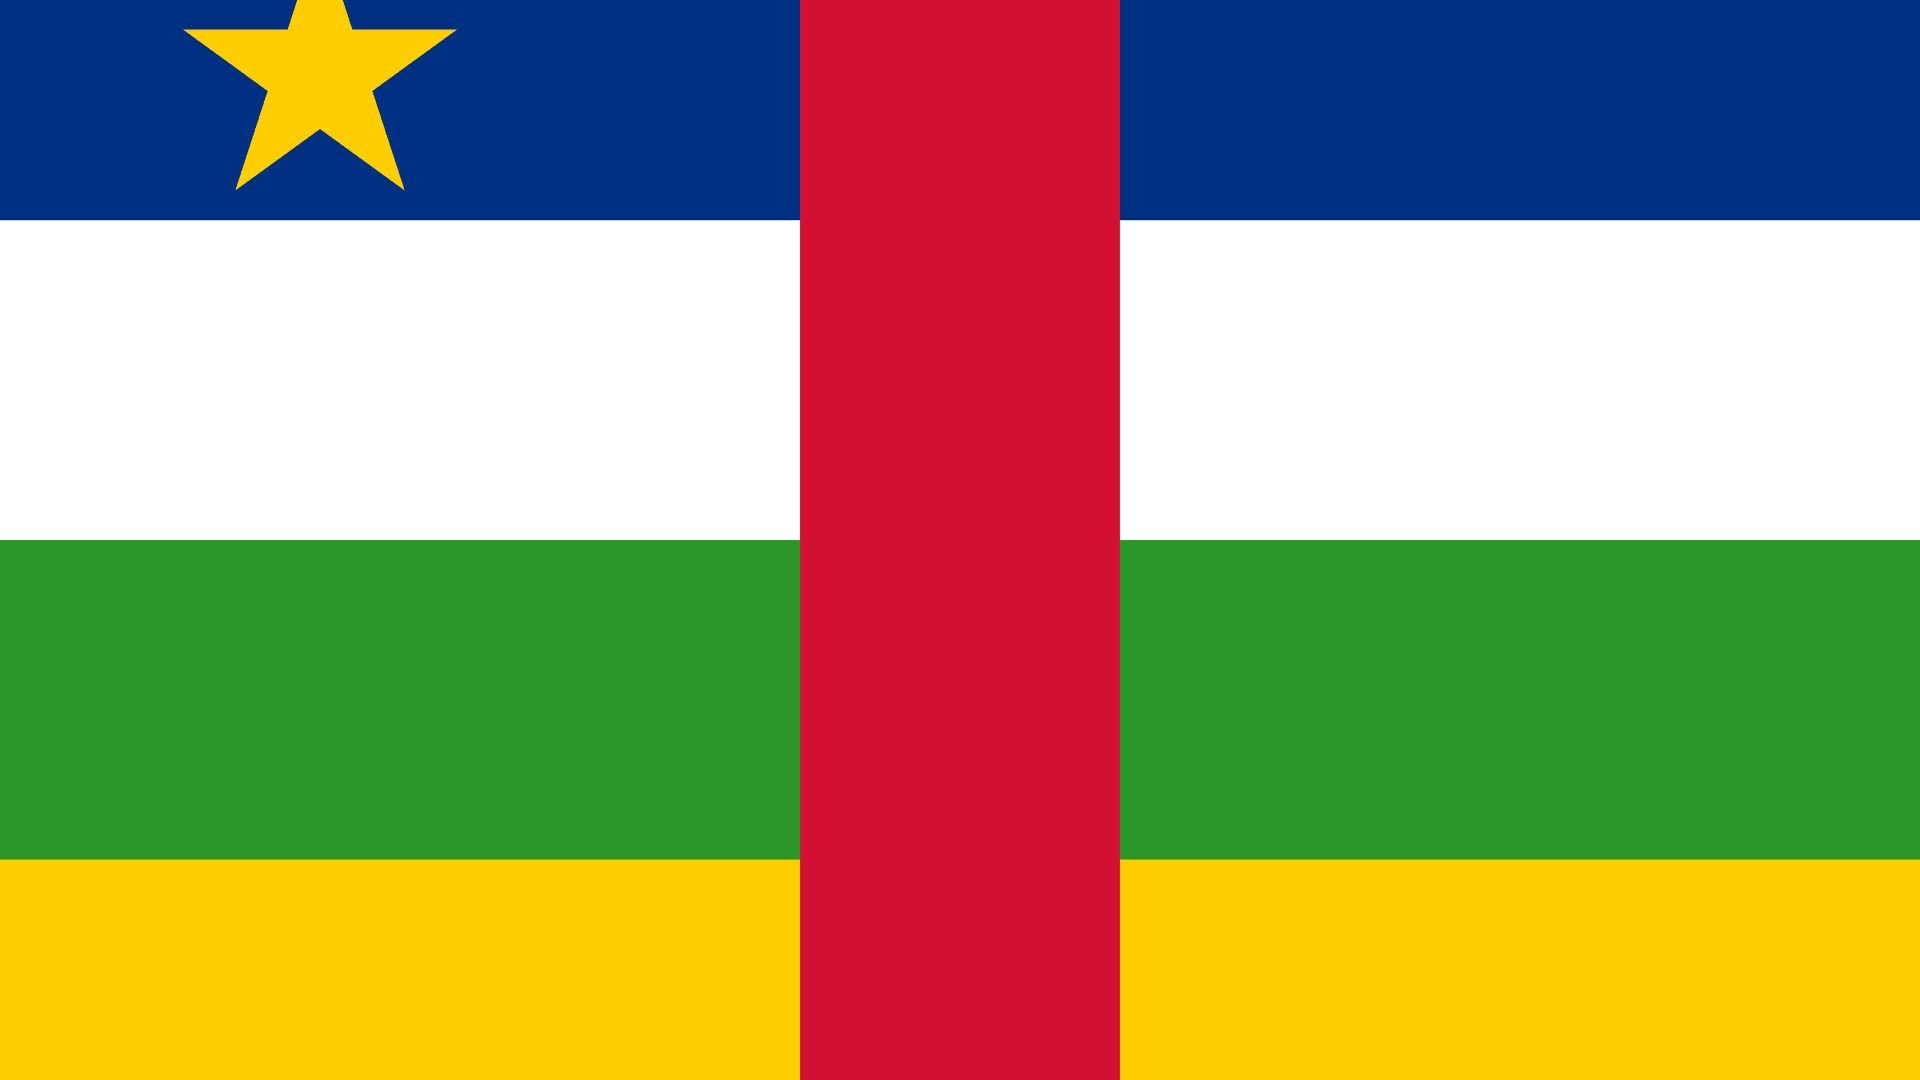 A bandeira consiste em quatro faixas horizontais nas cores azul, branca, verde e amarela da parte superior para a inferior.  Na faixa azul superior há uma estrela amarela.